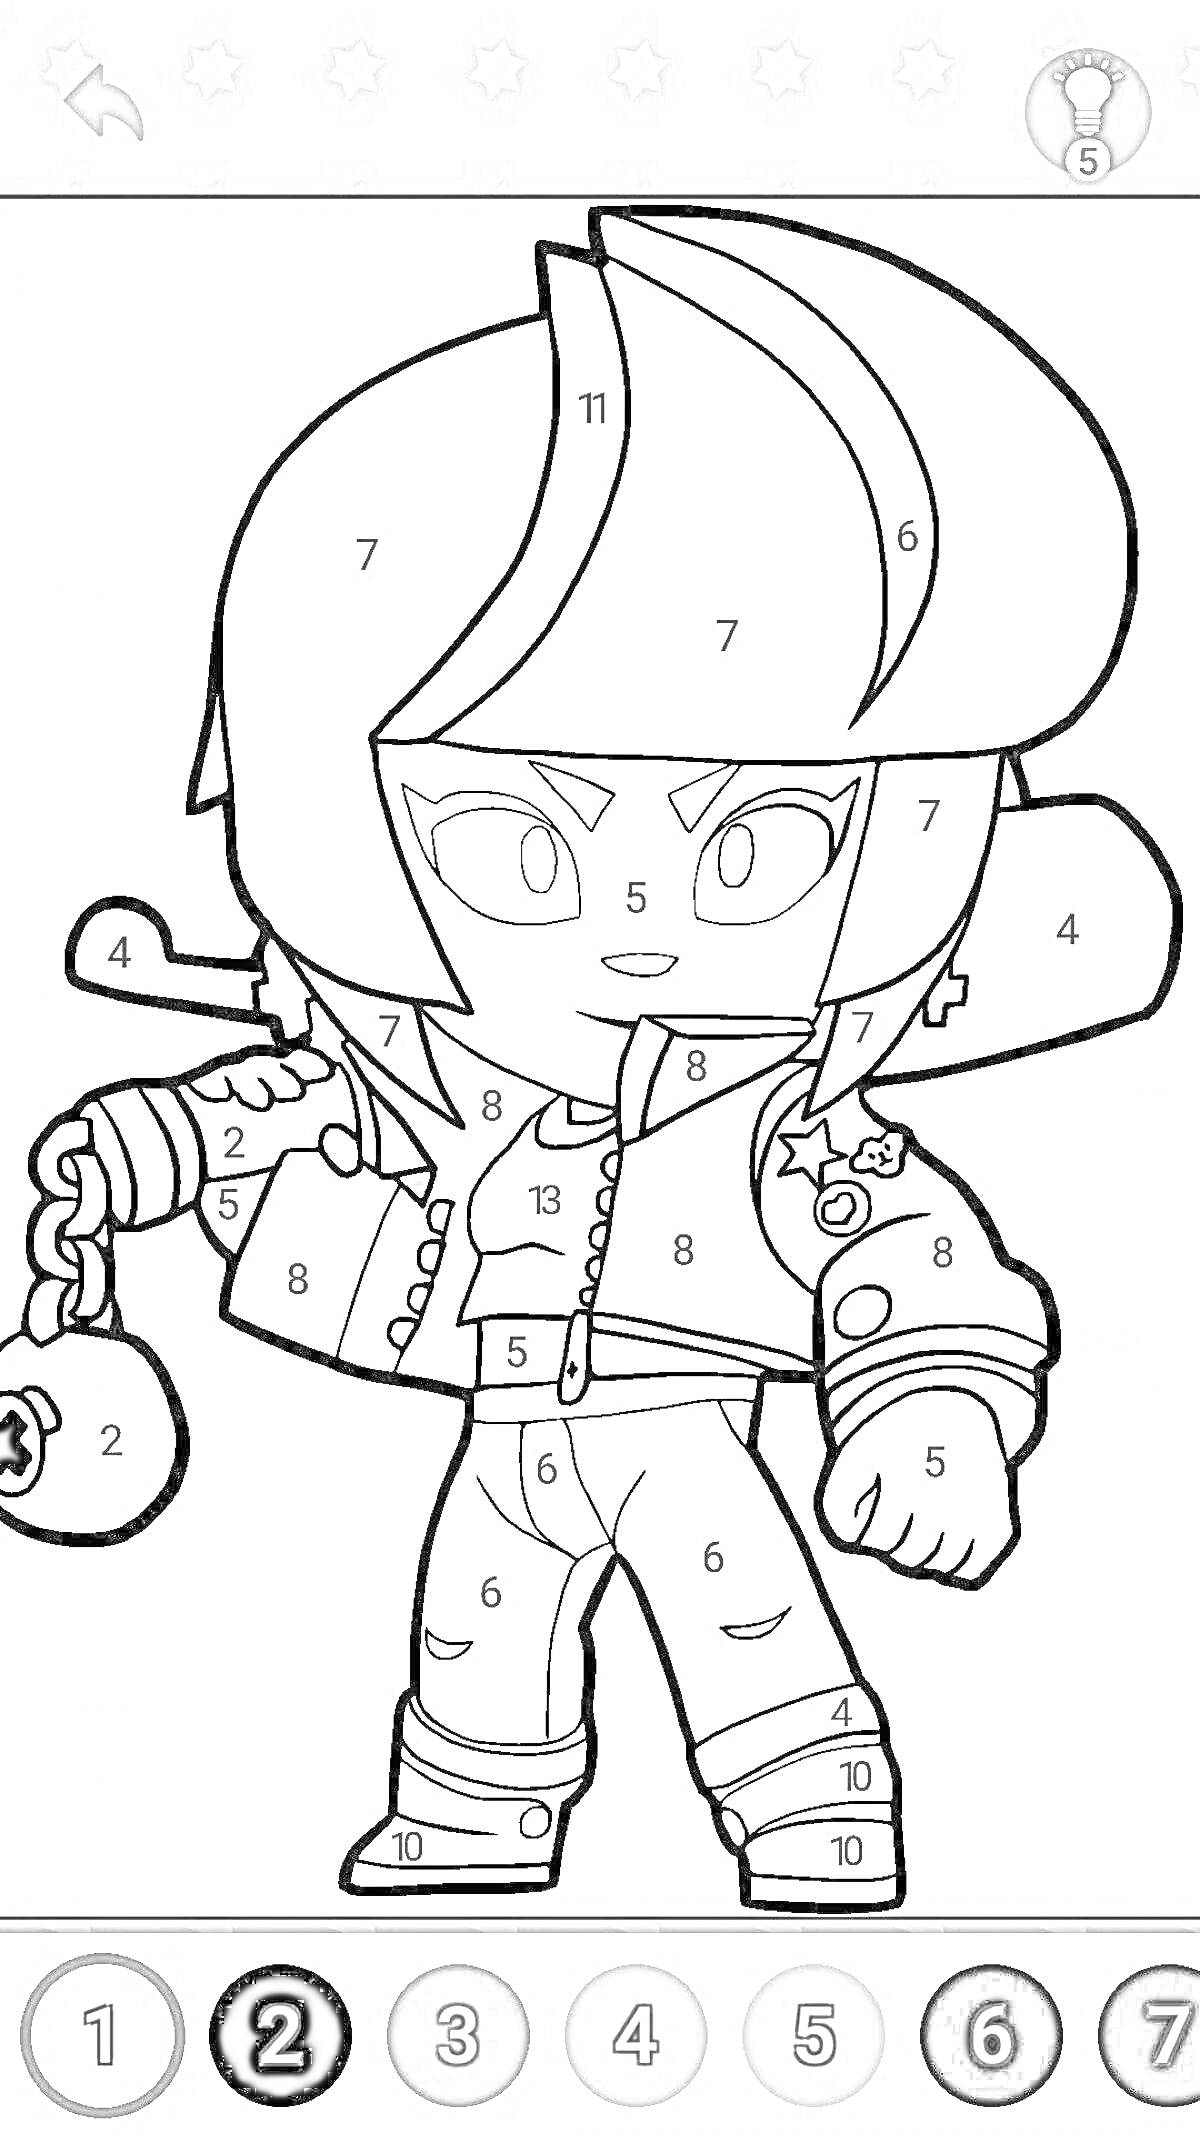 Раскраска Персонаж с бейсбольной битой, монеткой в руке, кожаной курткой и стильной прической